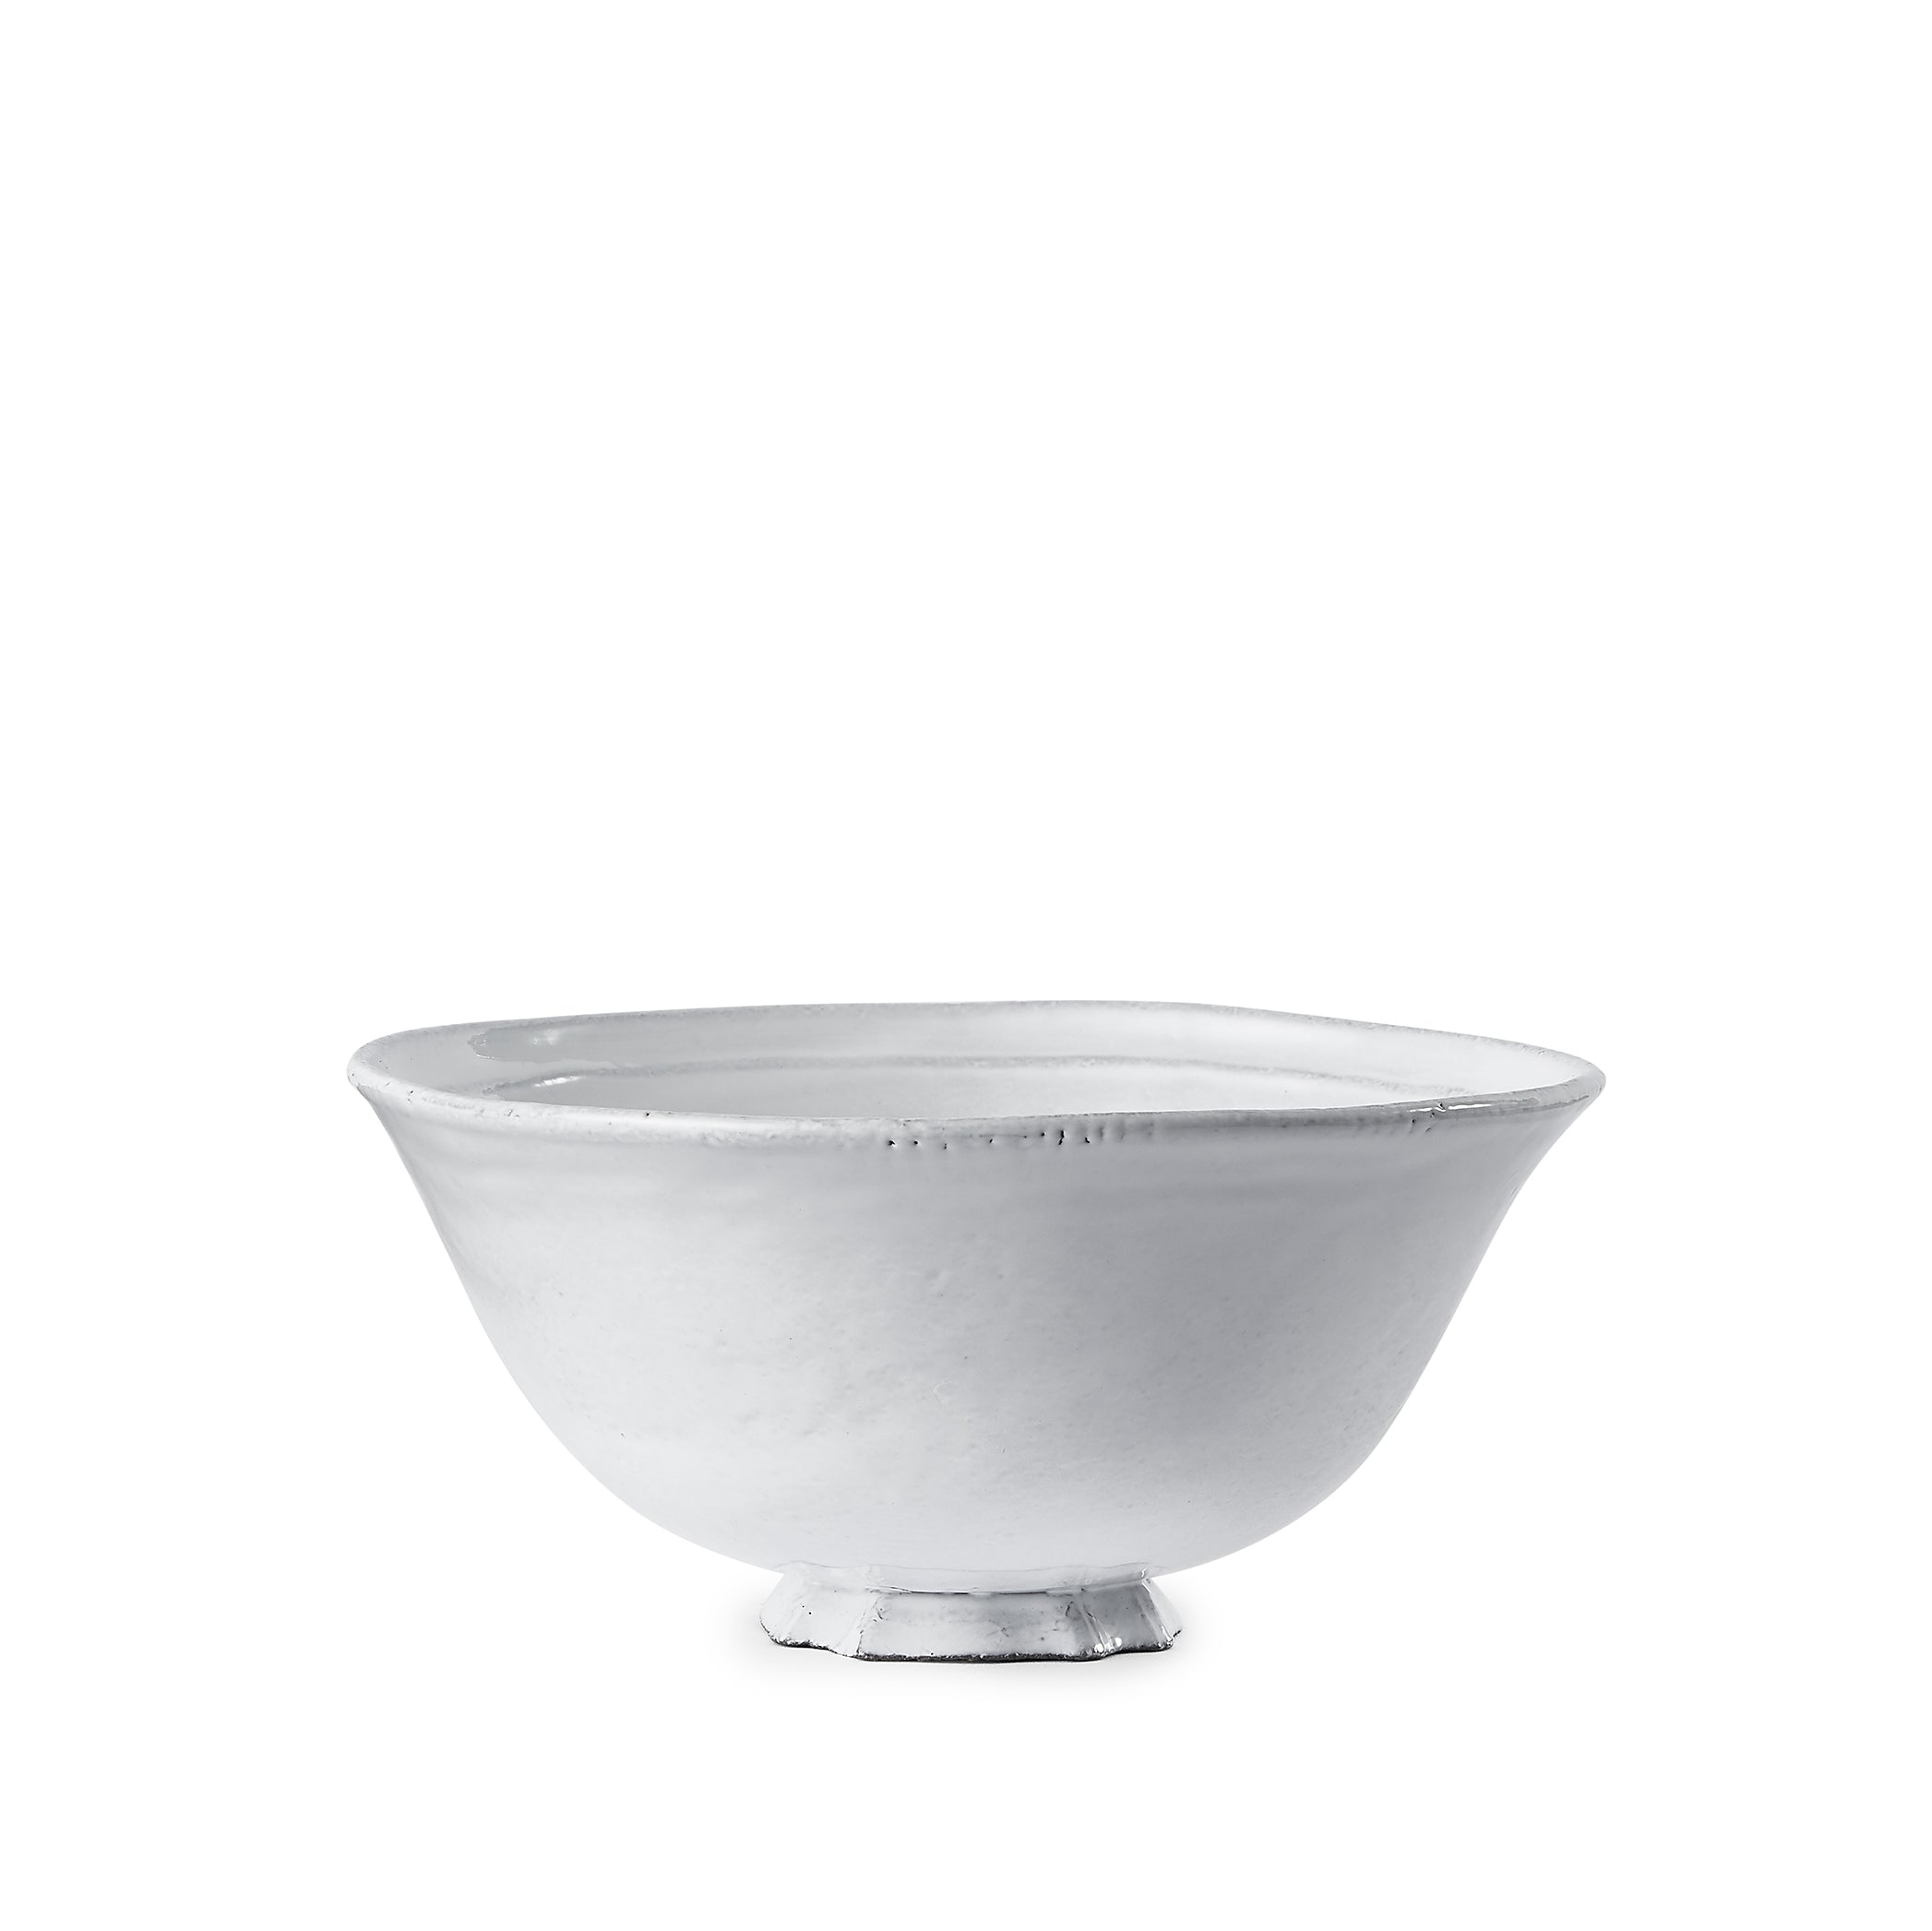 Simple Small Soup Bowl by Astier de Villatte, 14cm